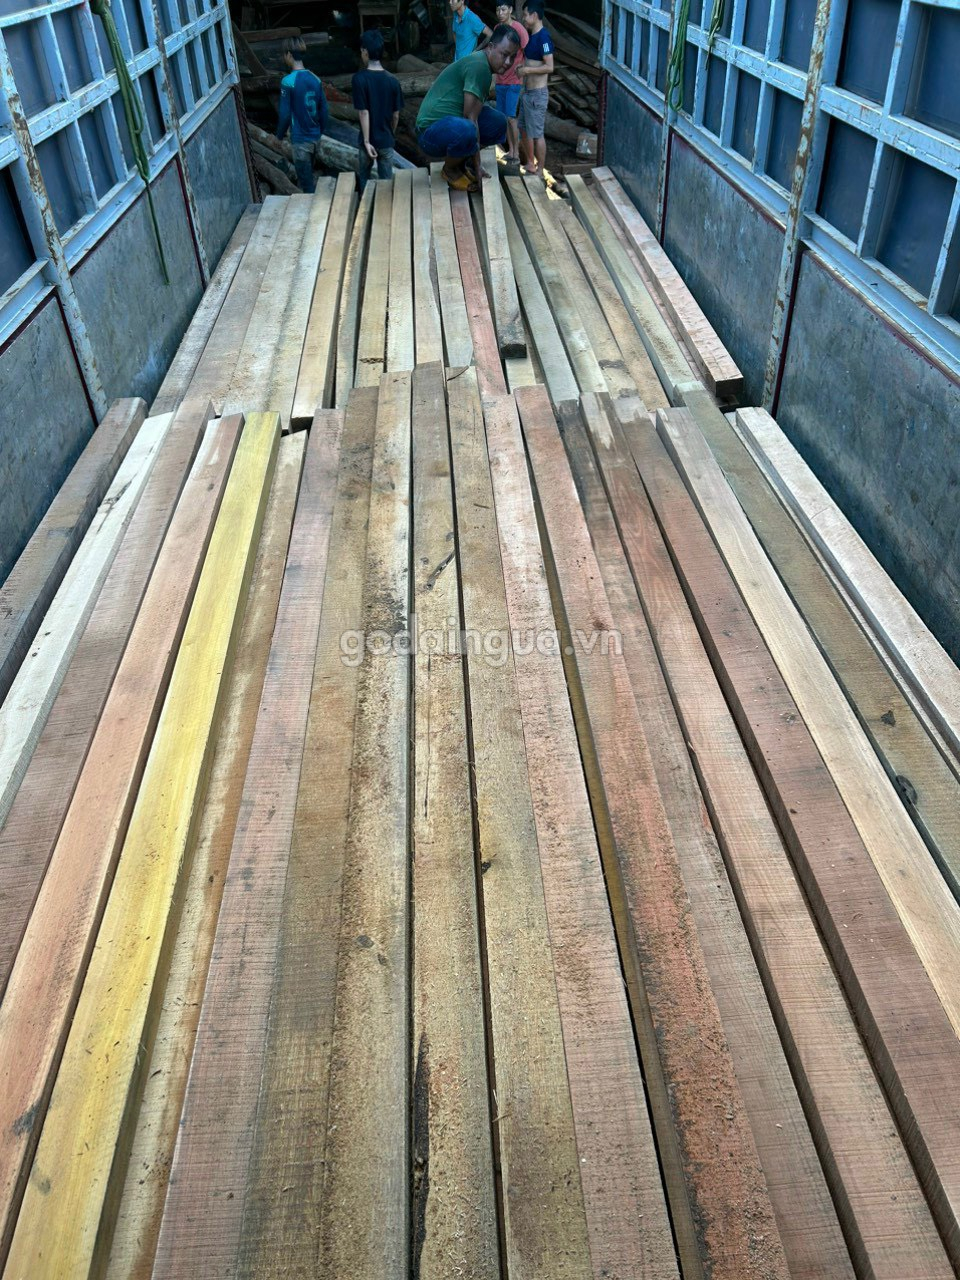 gỗ tạp